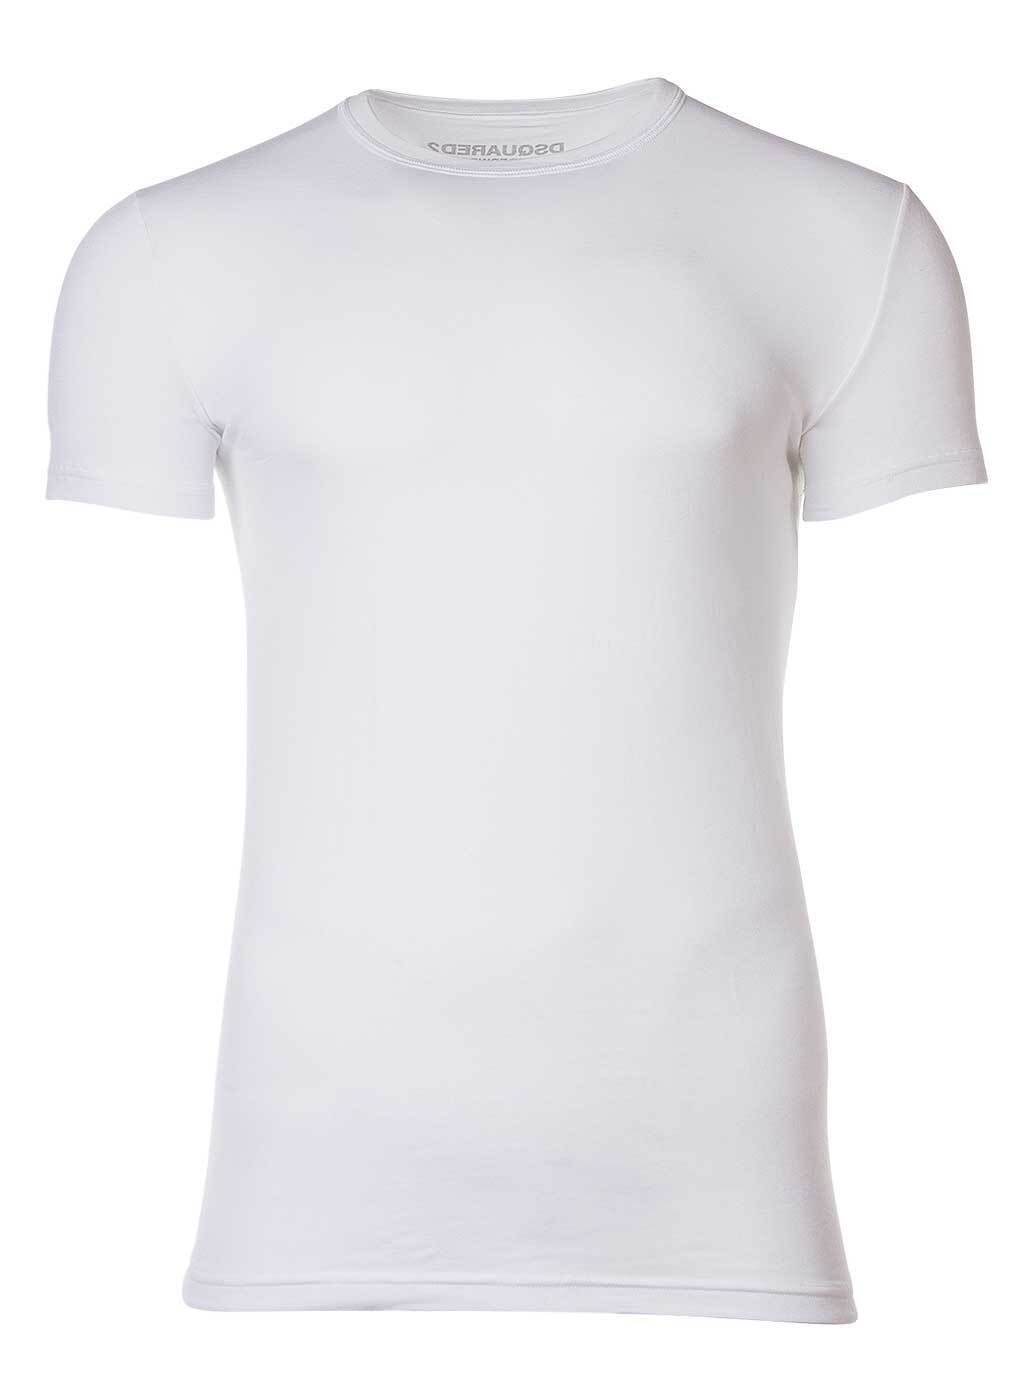 Cotton Dsquared2 - T-Shirt Stretch Herren Weiß Rundhals, T-Shirt Twin